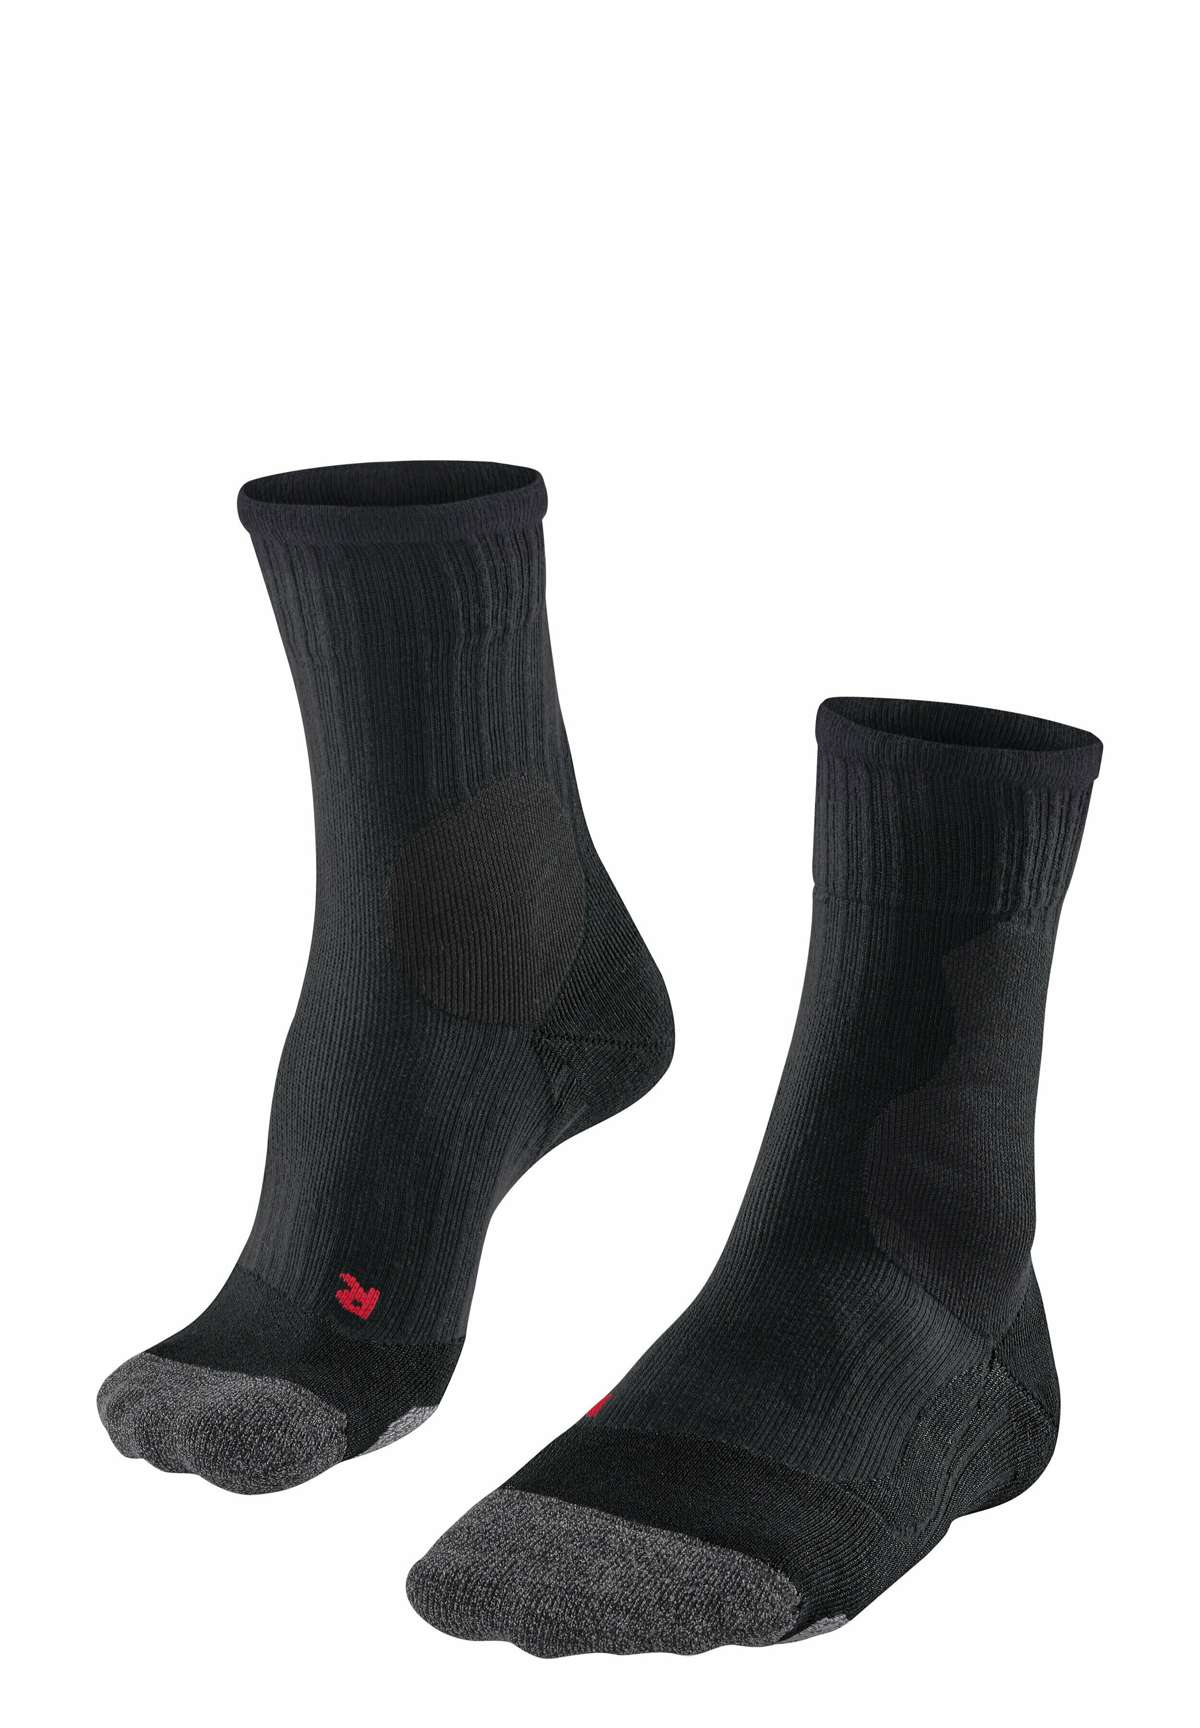 Спортивные носки PL2 Stabilizing Medium-strong cushioned